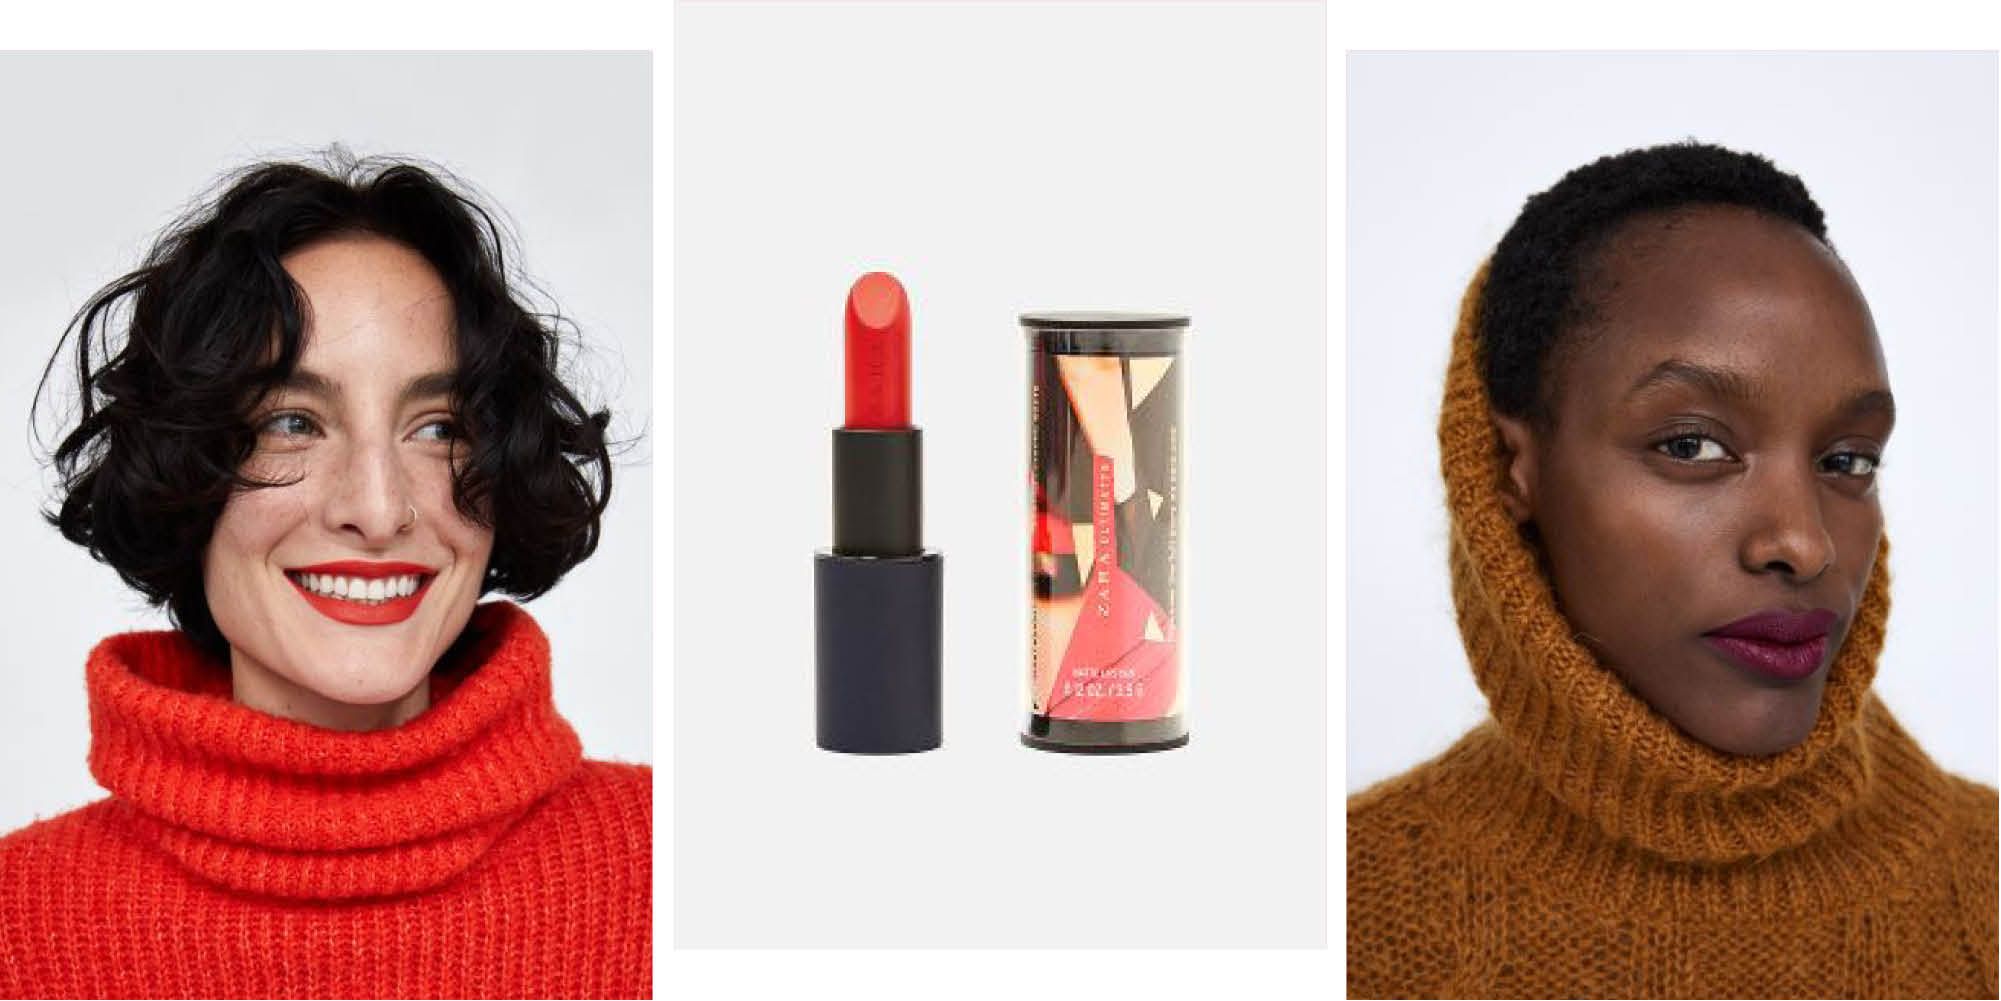 Zara Makeup Line - The Fashion Retailer 